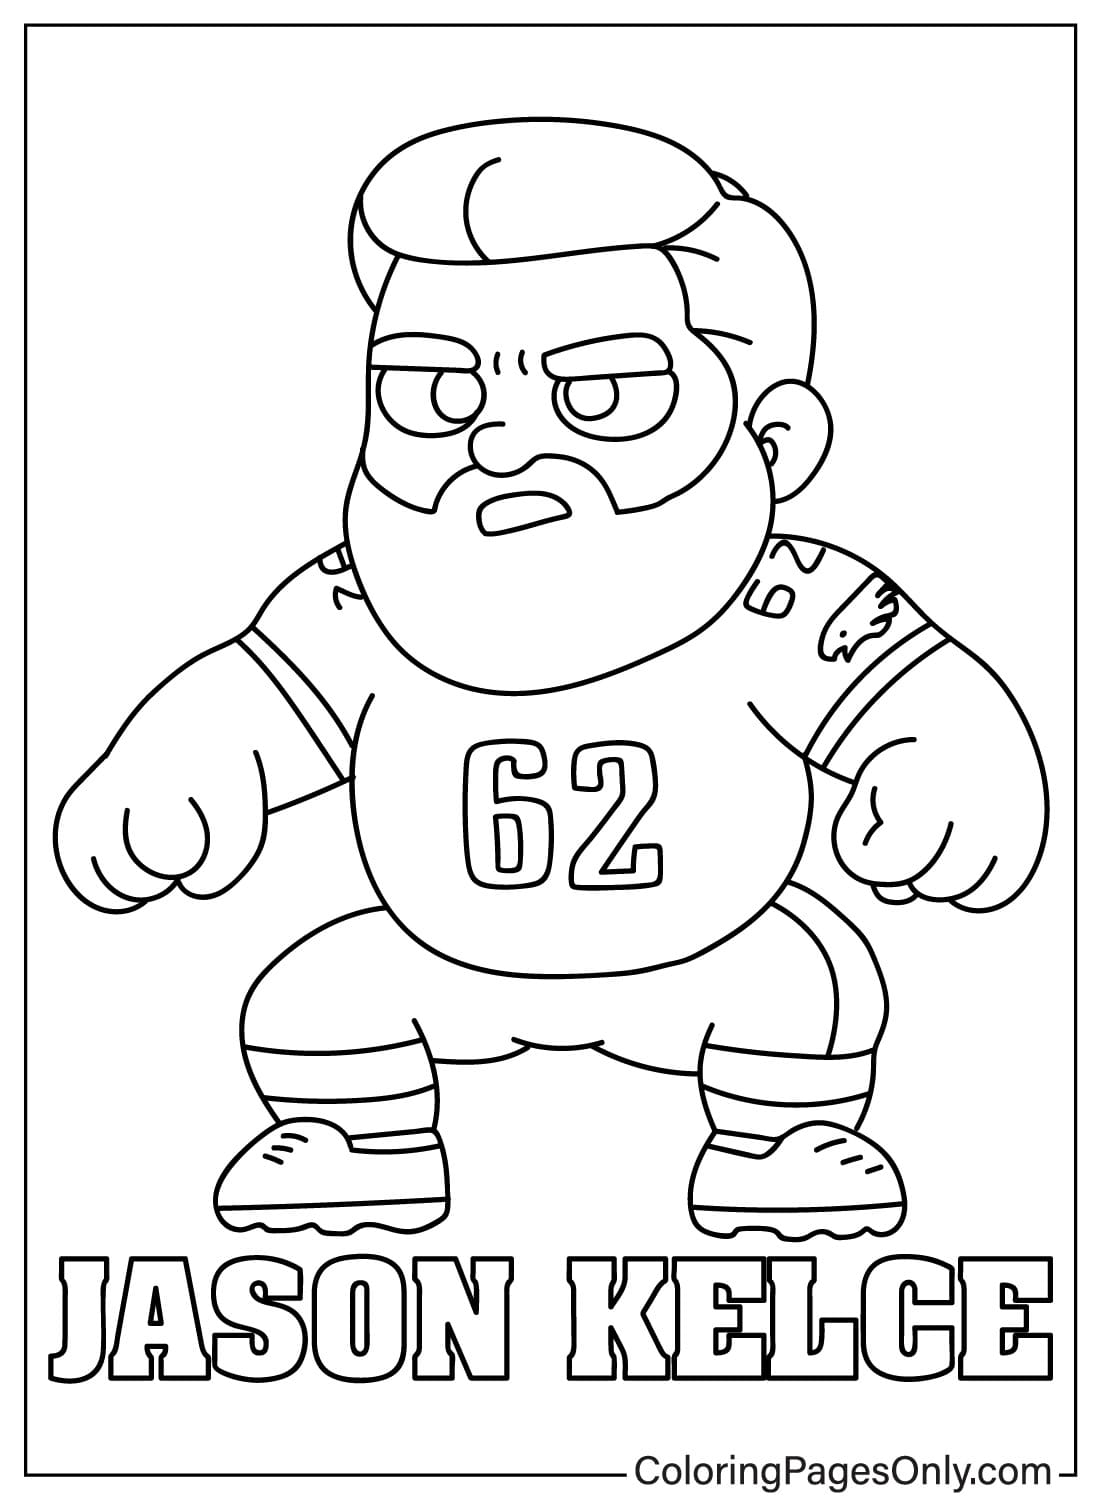 Página para colorir de Jason Kelce do Philadelphia Eagles